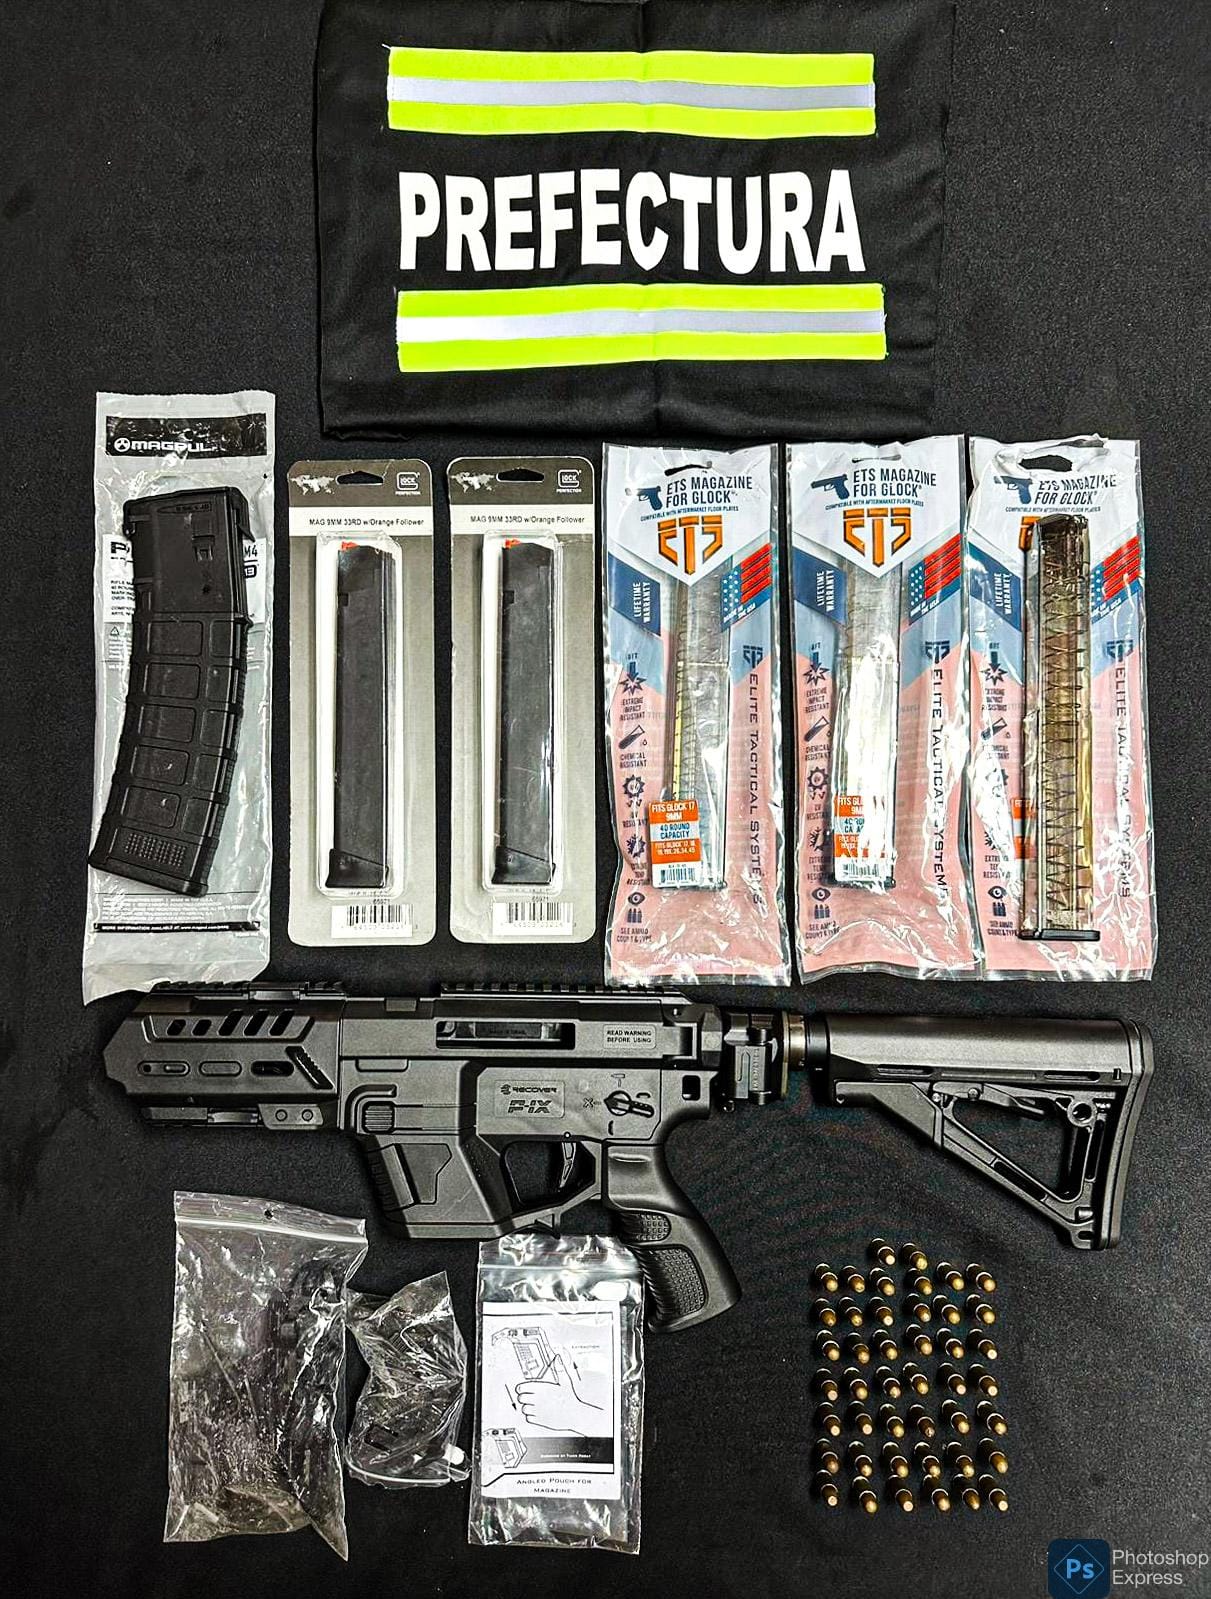 Fusil Glock, cargadores, municiones de guerra y repuestos incautados por la Prefectura de Uruguay.